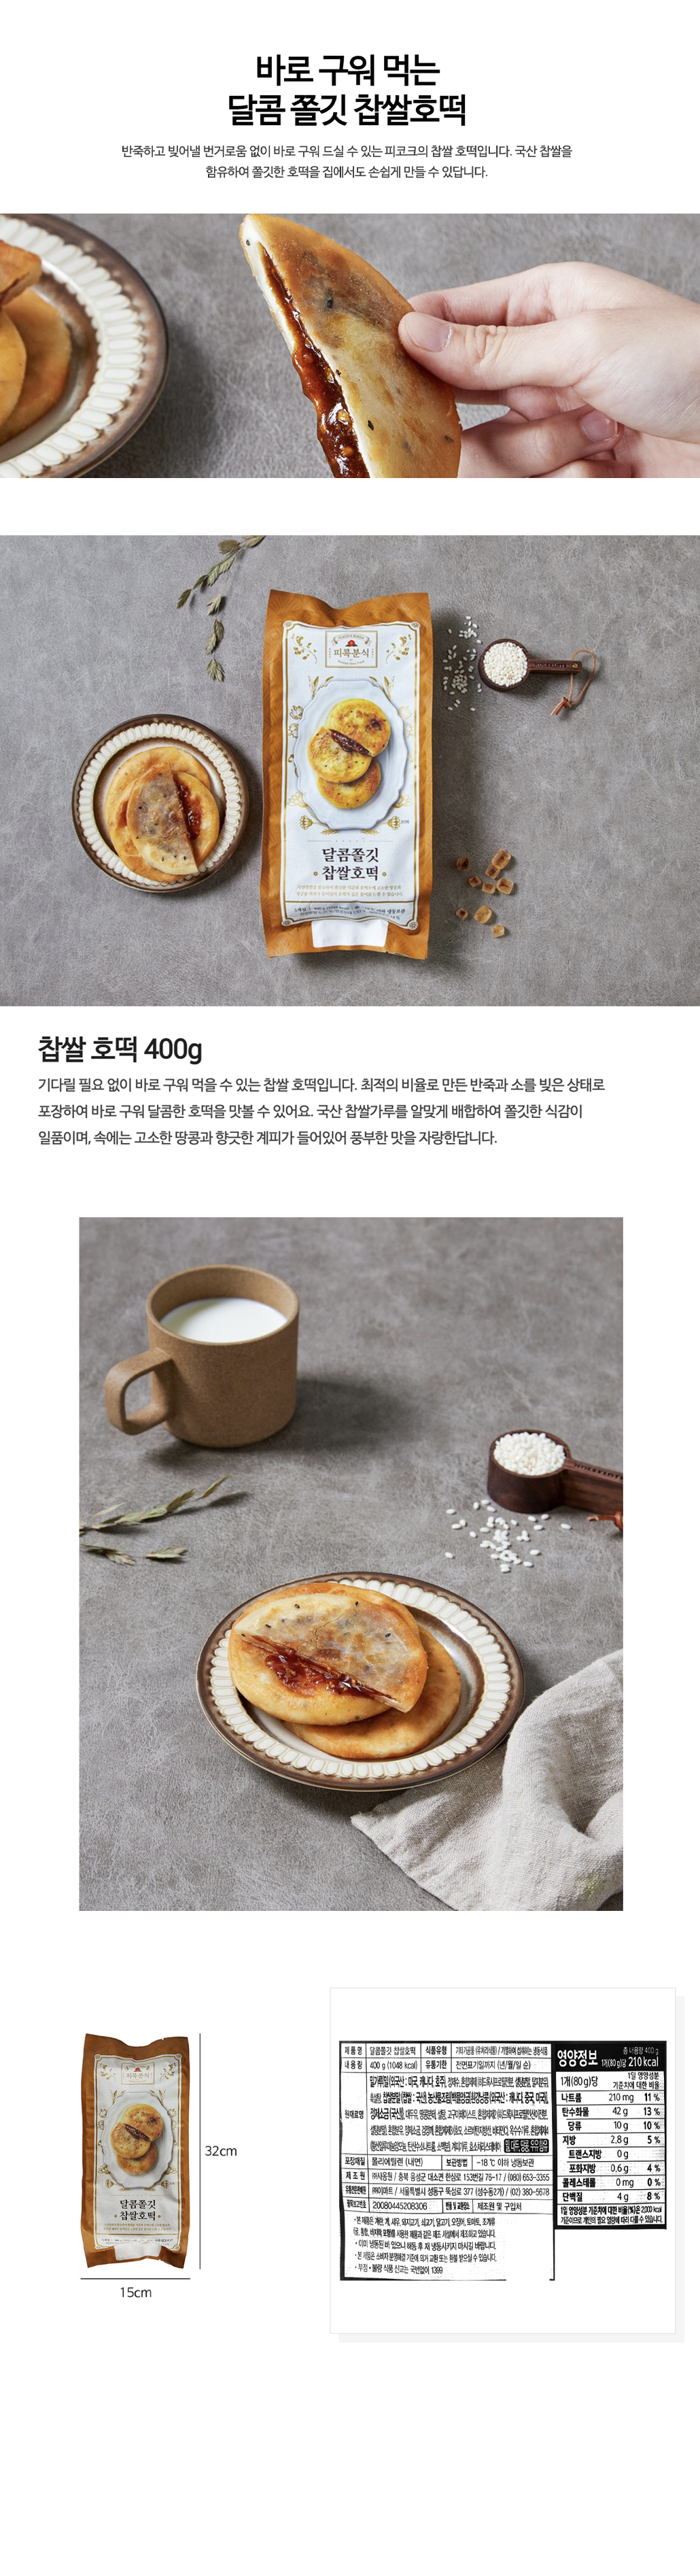 韓國食品-[Peacock] 糯米煎糖餡餅 400g